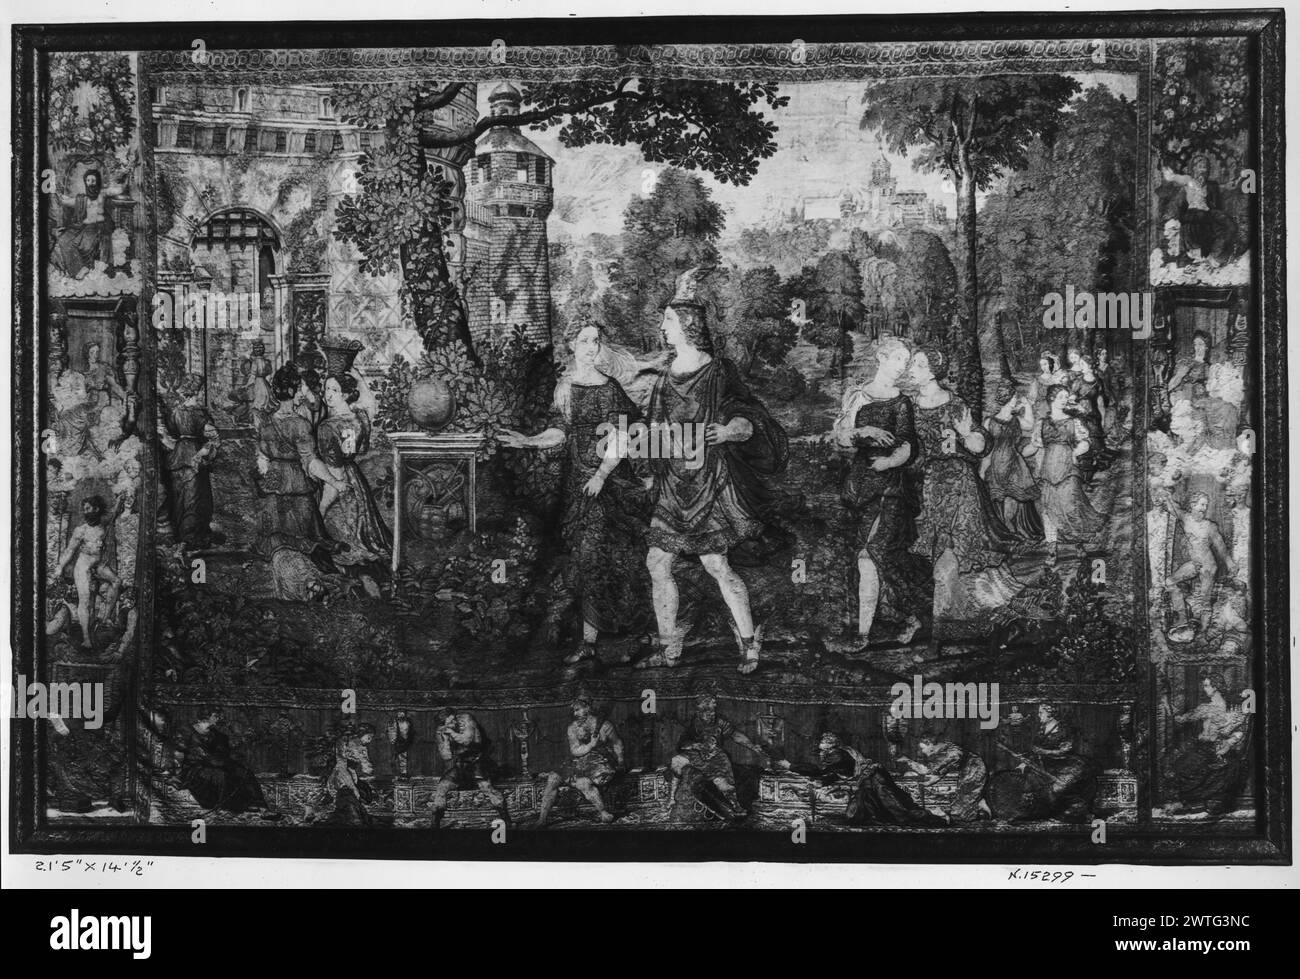 Mercure marchant avec Herse. Pannemaker, Wilhelm de (Netherlandish (avant 1600) - Flandre, Act. 1535-1578) (atelier) [tisserand] c. 1550 tapisserie dimensions : H 14'.5' x l 21.5' tapisserie matériaux/techniques : laine et soie ; fil métallique (argent) ; fil métallique (argent-doré) culture : Centre de tissage flamand : Bruxelles histoire de propriété : famille la Cerda, ducs de Medinaceli, Espagne (ensemble complet en leur possession, peut-être depuis le XVIe siècle). Duchesse de Denia, veuve du duc (en sa possession jusqu'à sa mort en 1903, date à laquelle la tapisserie passa aux héritiers du duc). Français et Royaume-Uni Espagne Banque D'Images